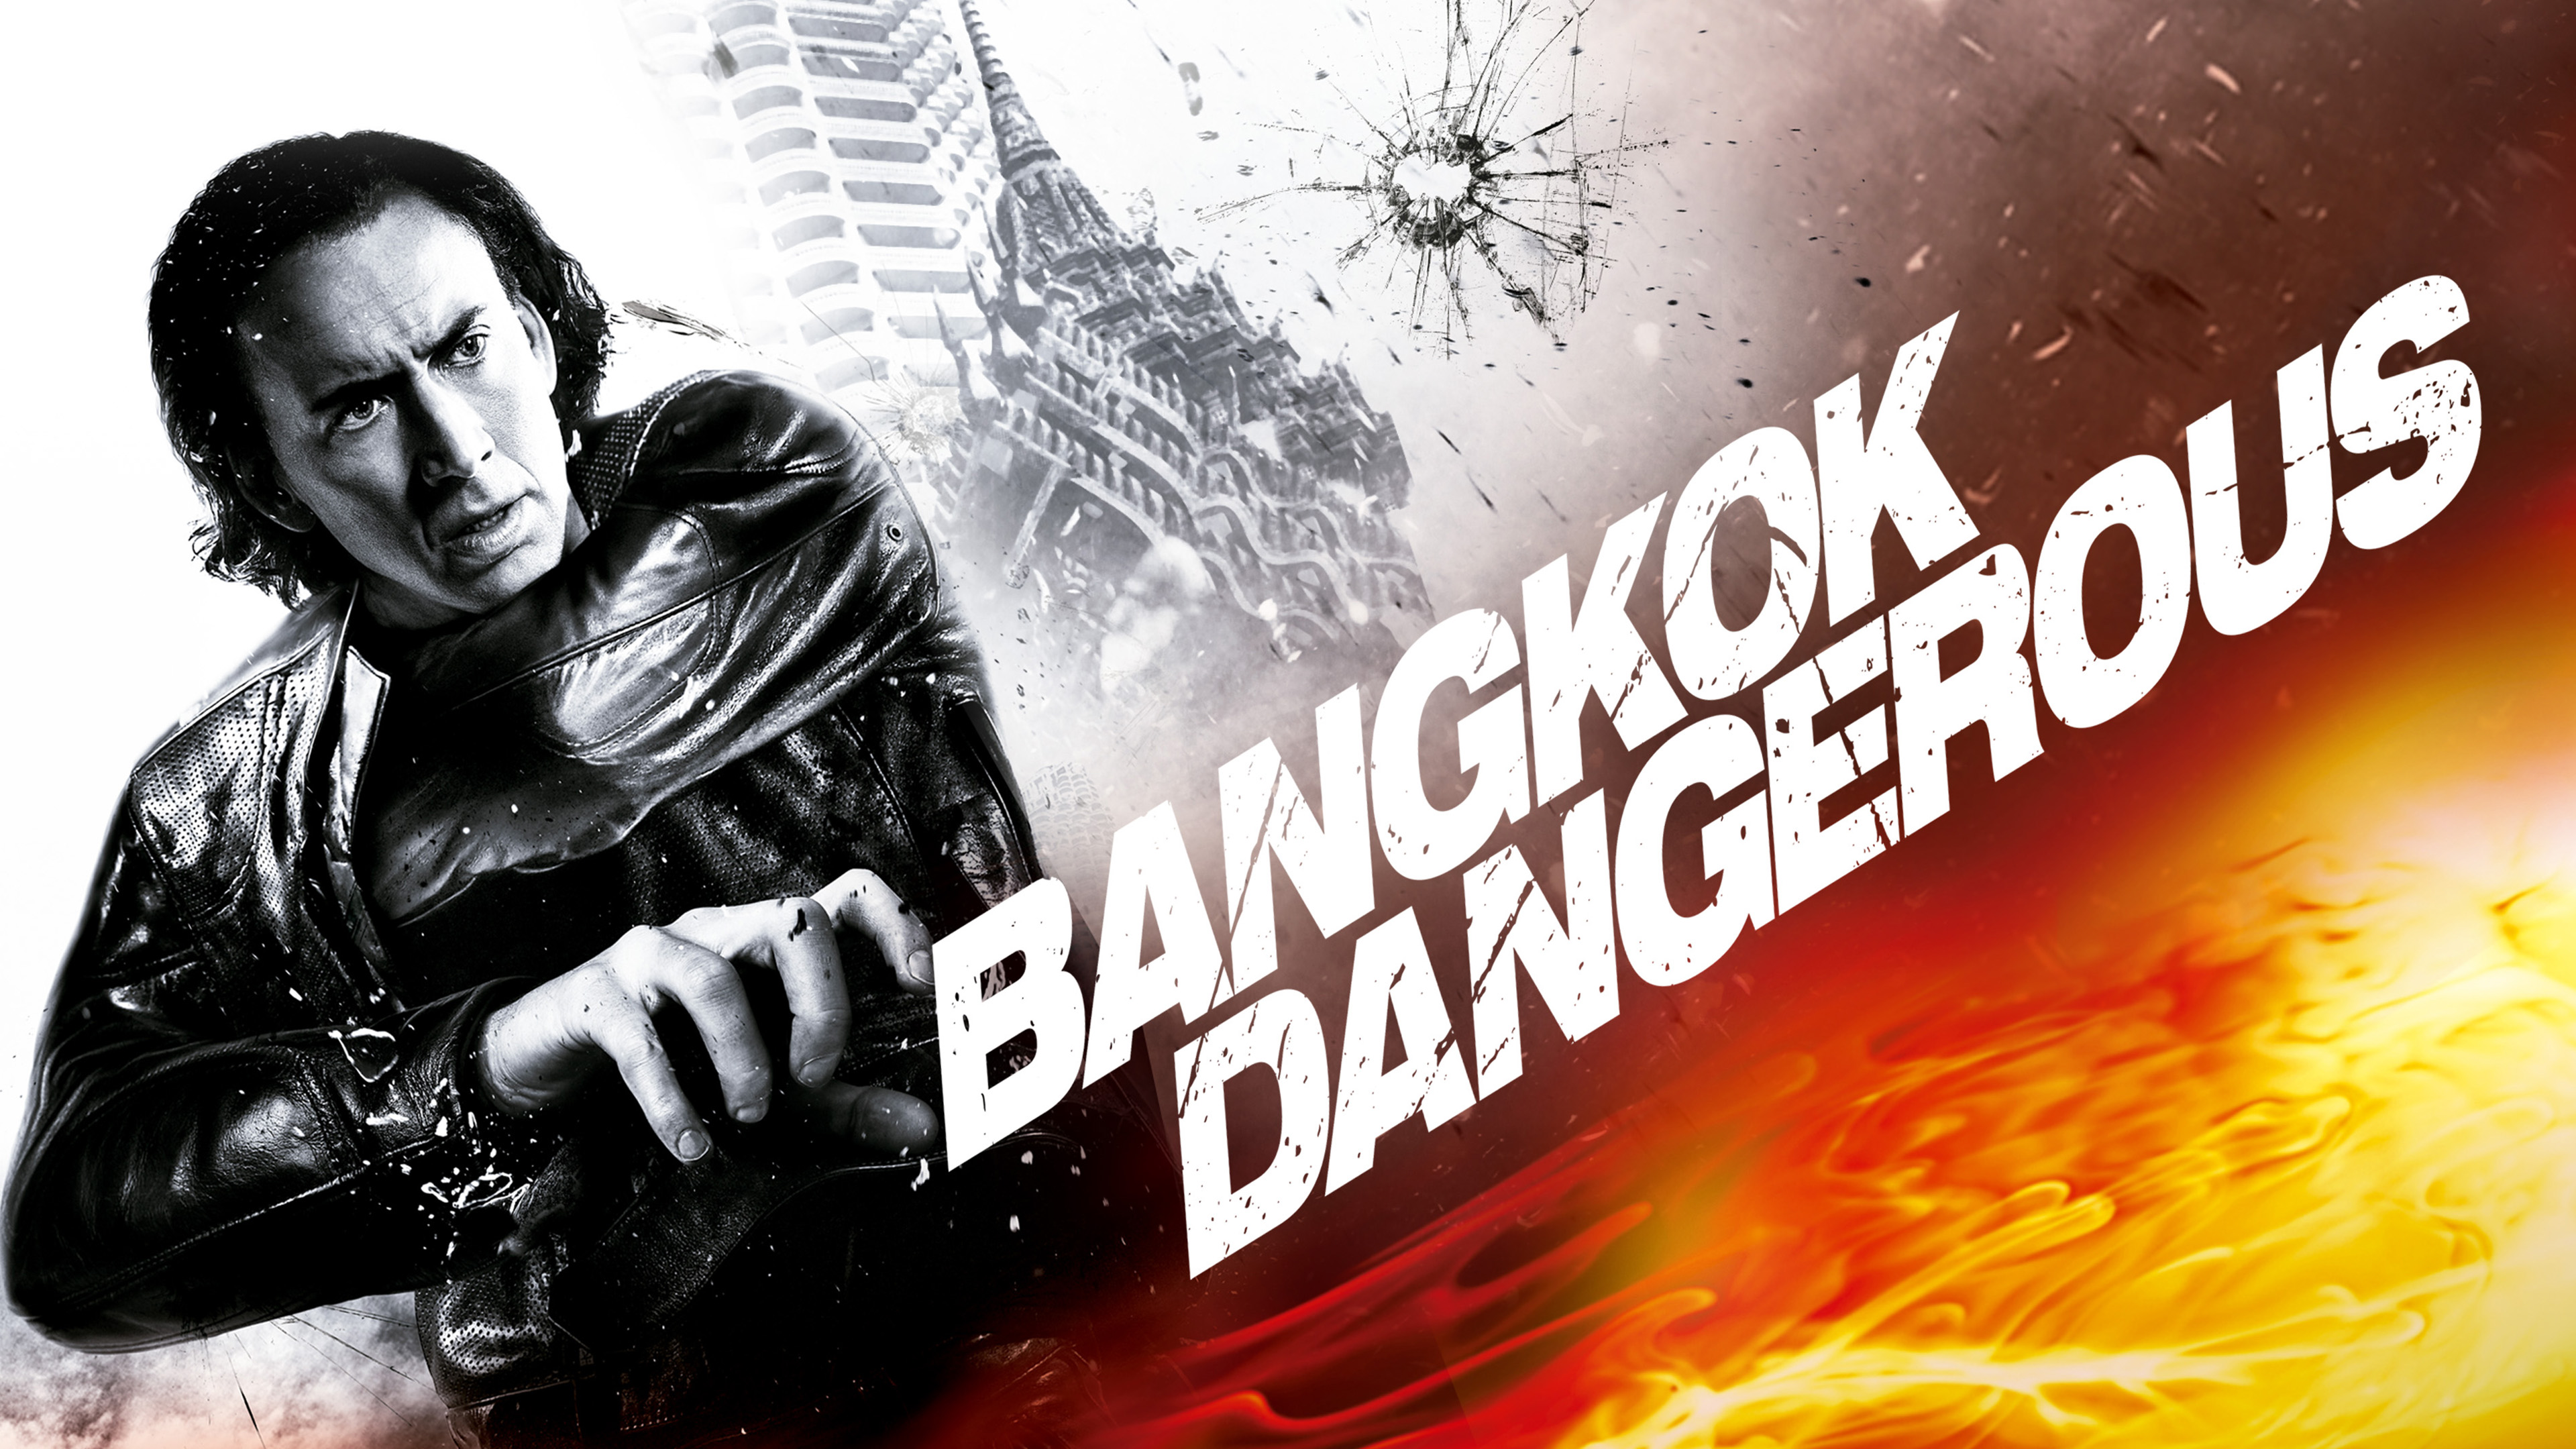 Bangkok Dangerous 2008 Hindi ORG Dual Audio 1080p | 720p | 480p Bluray ESub Download